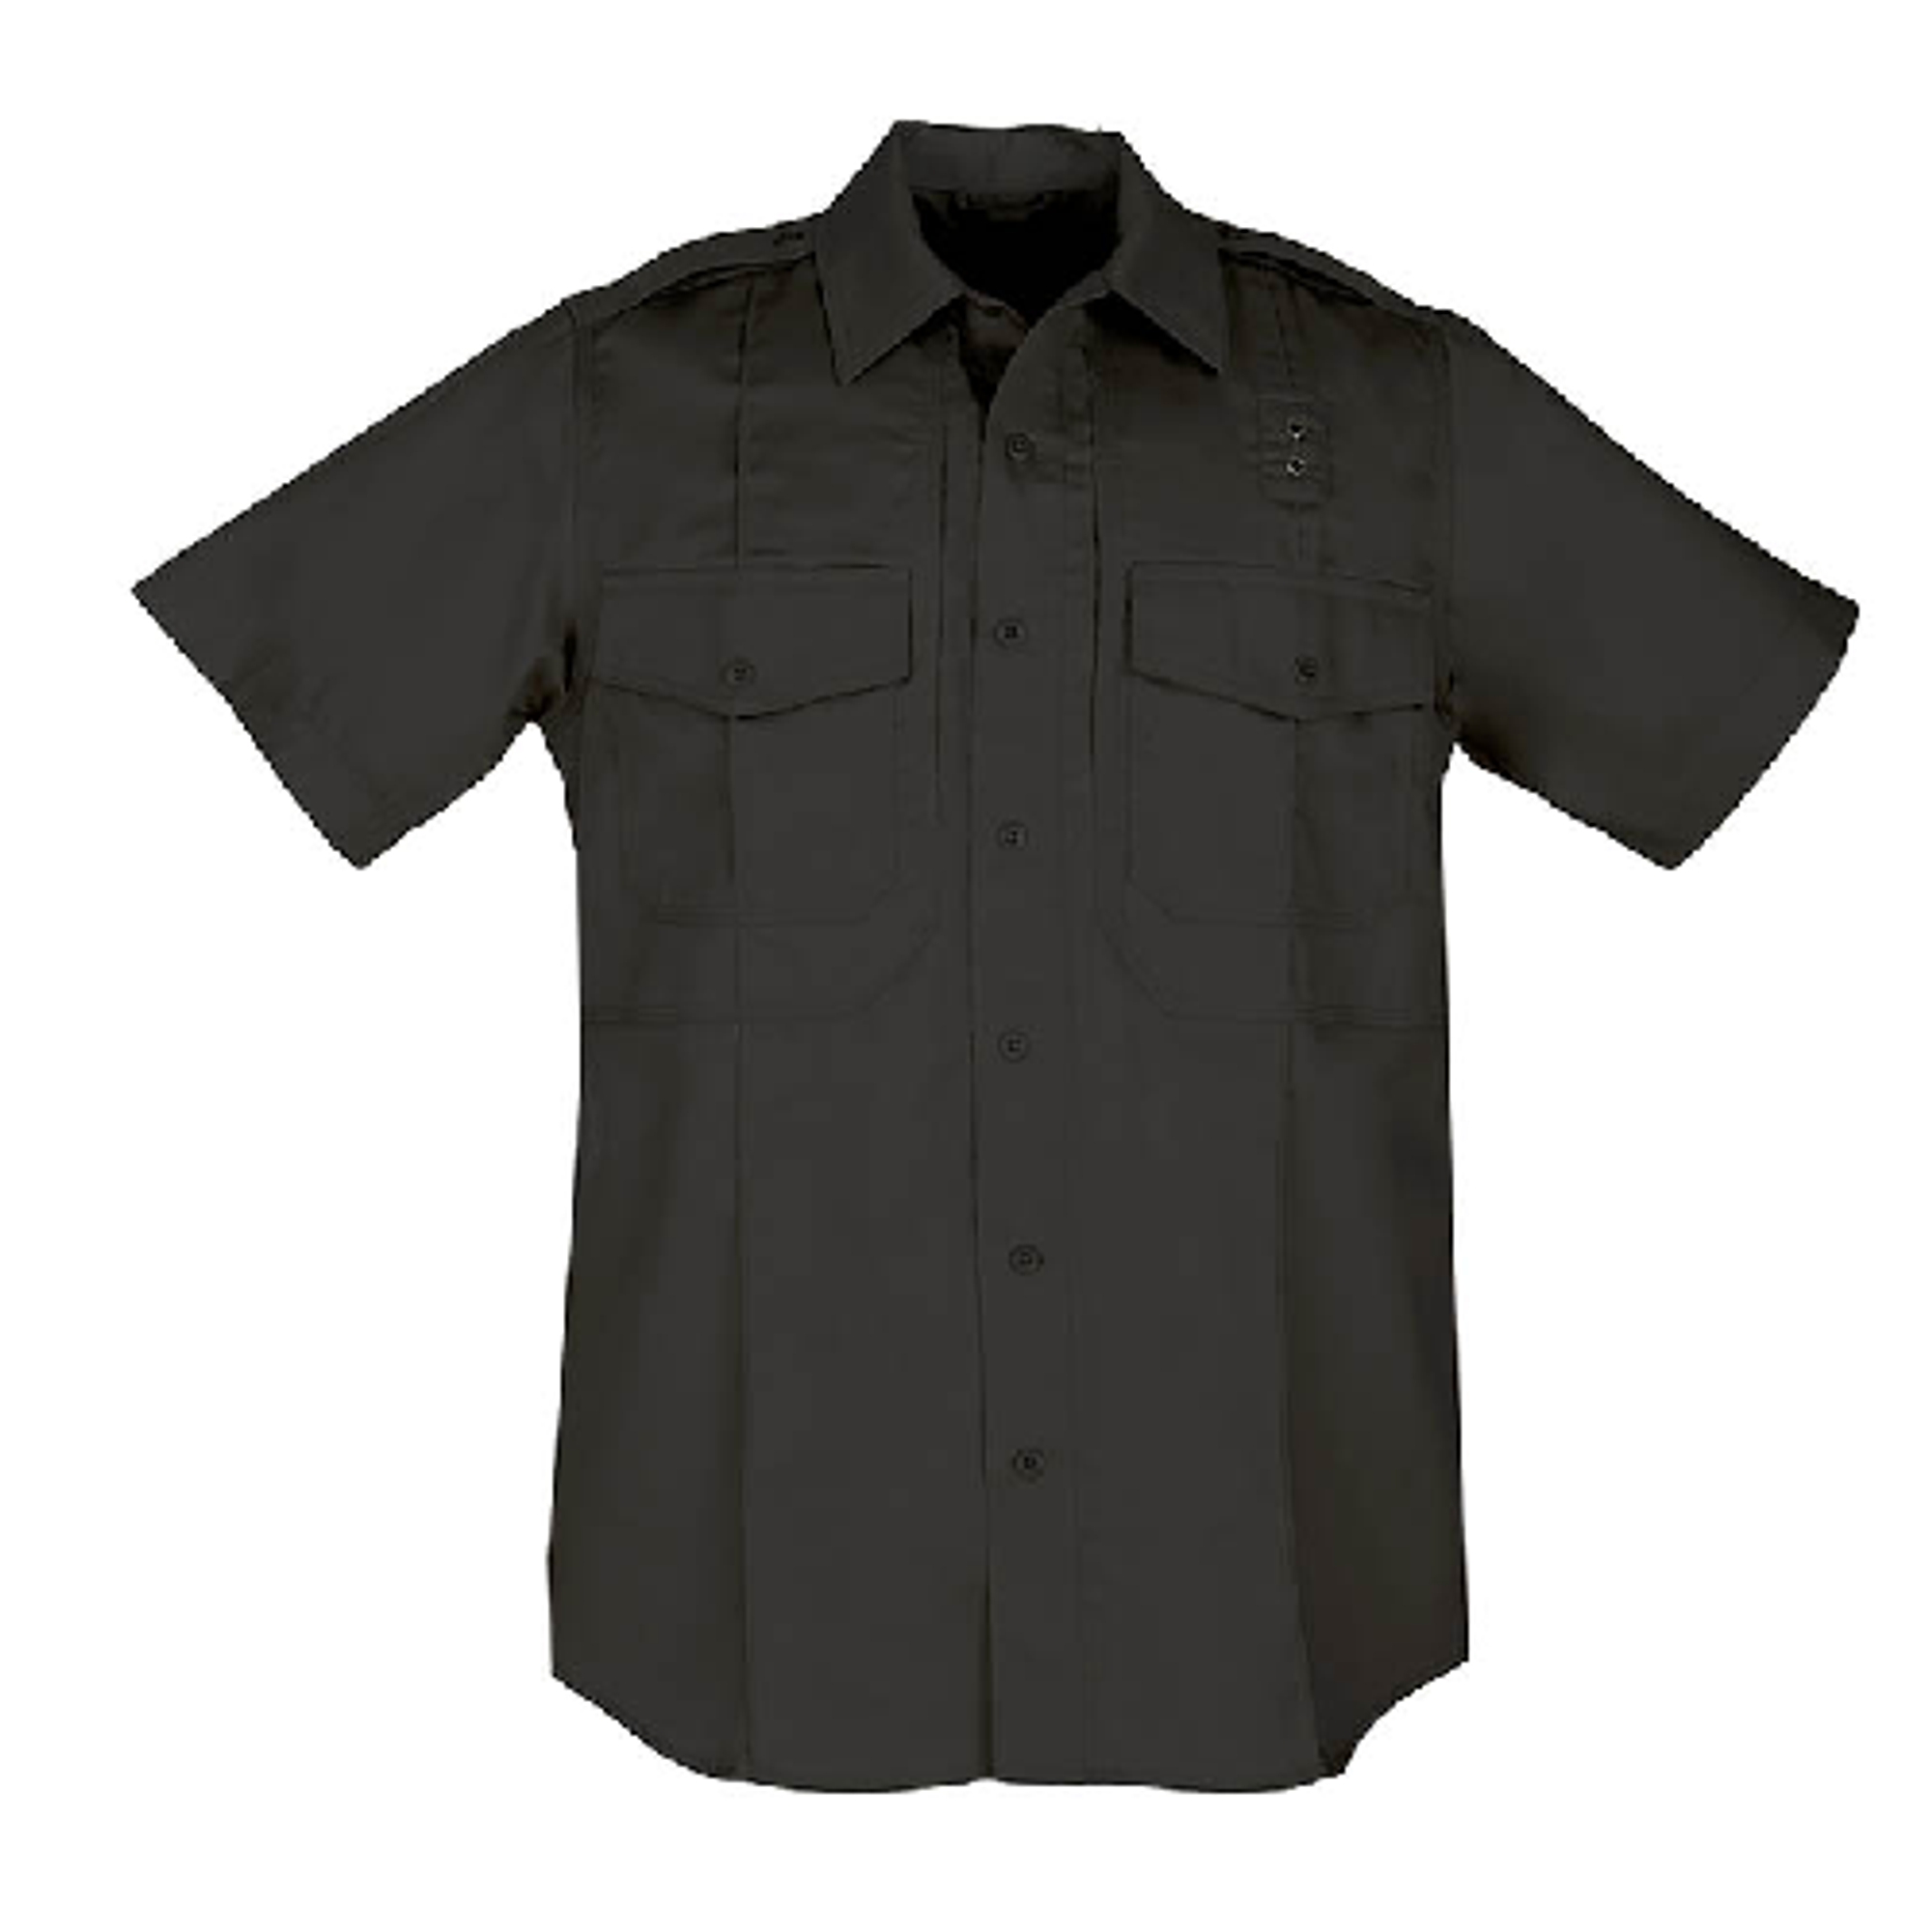 Class B Pdu Twill Shirt - KR5-71177019MR